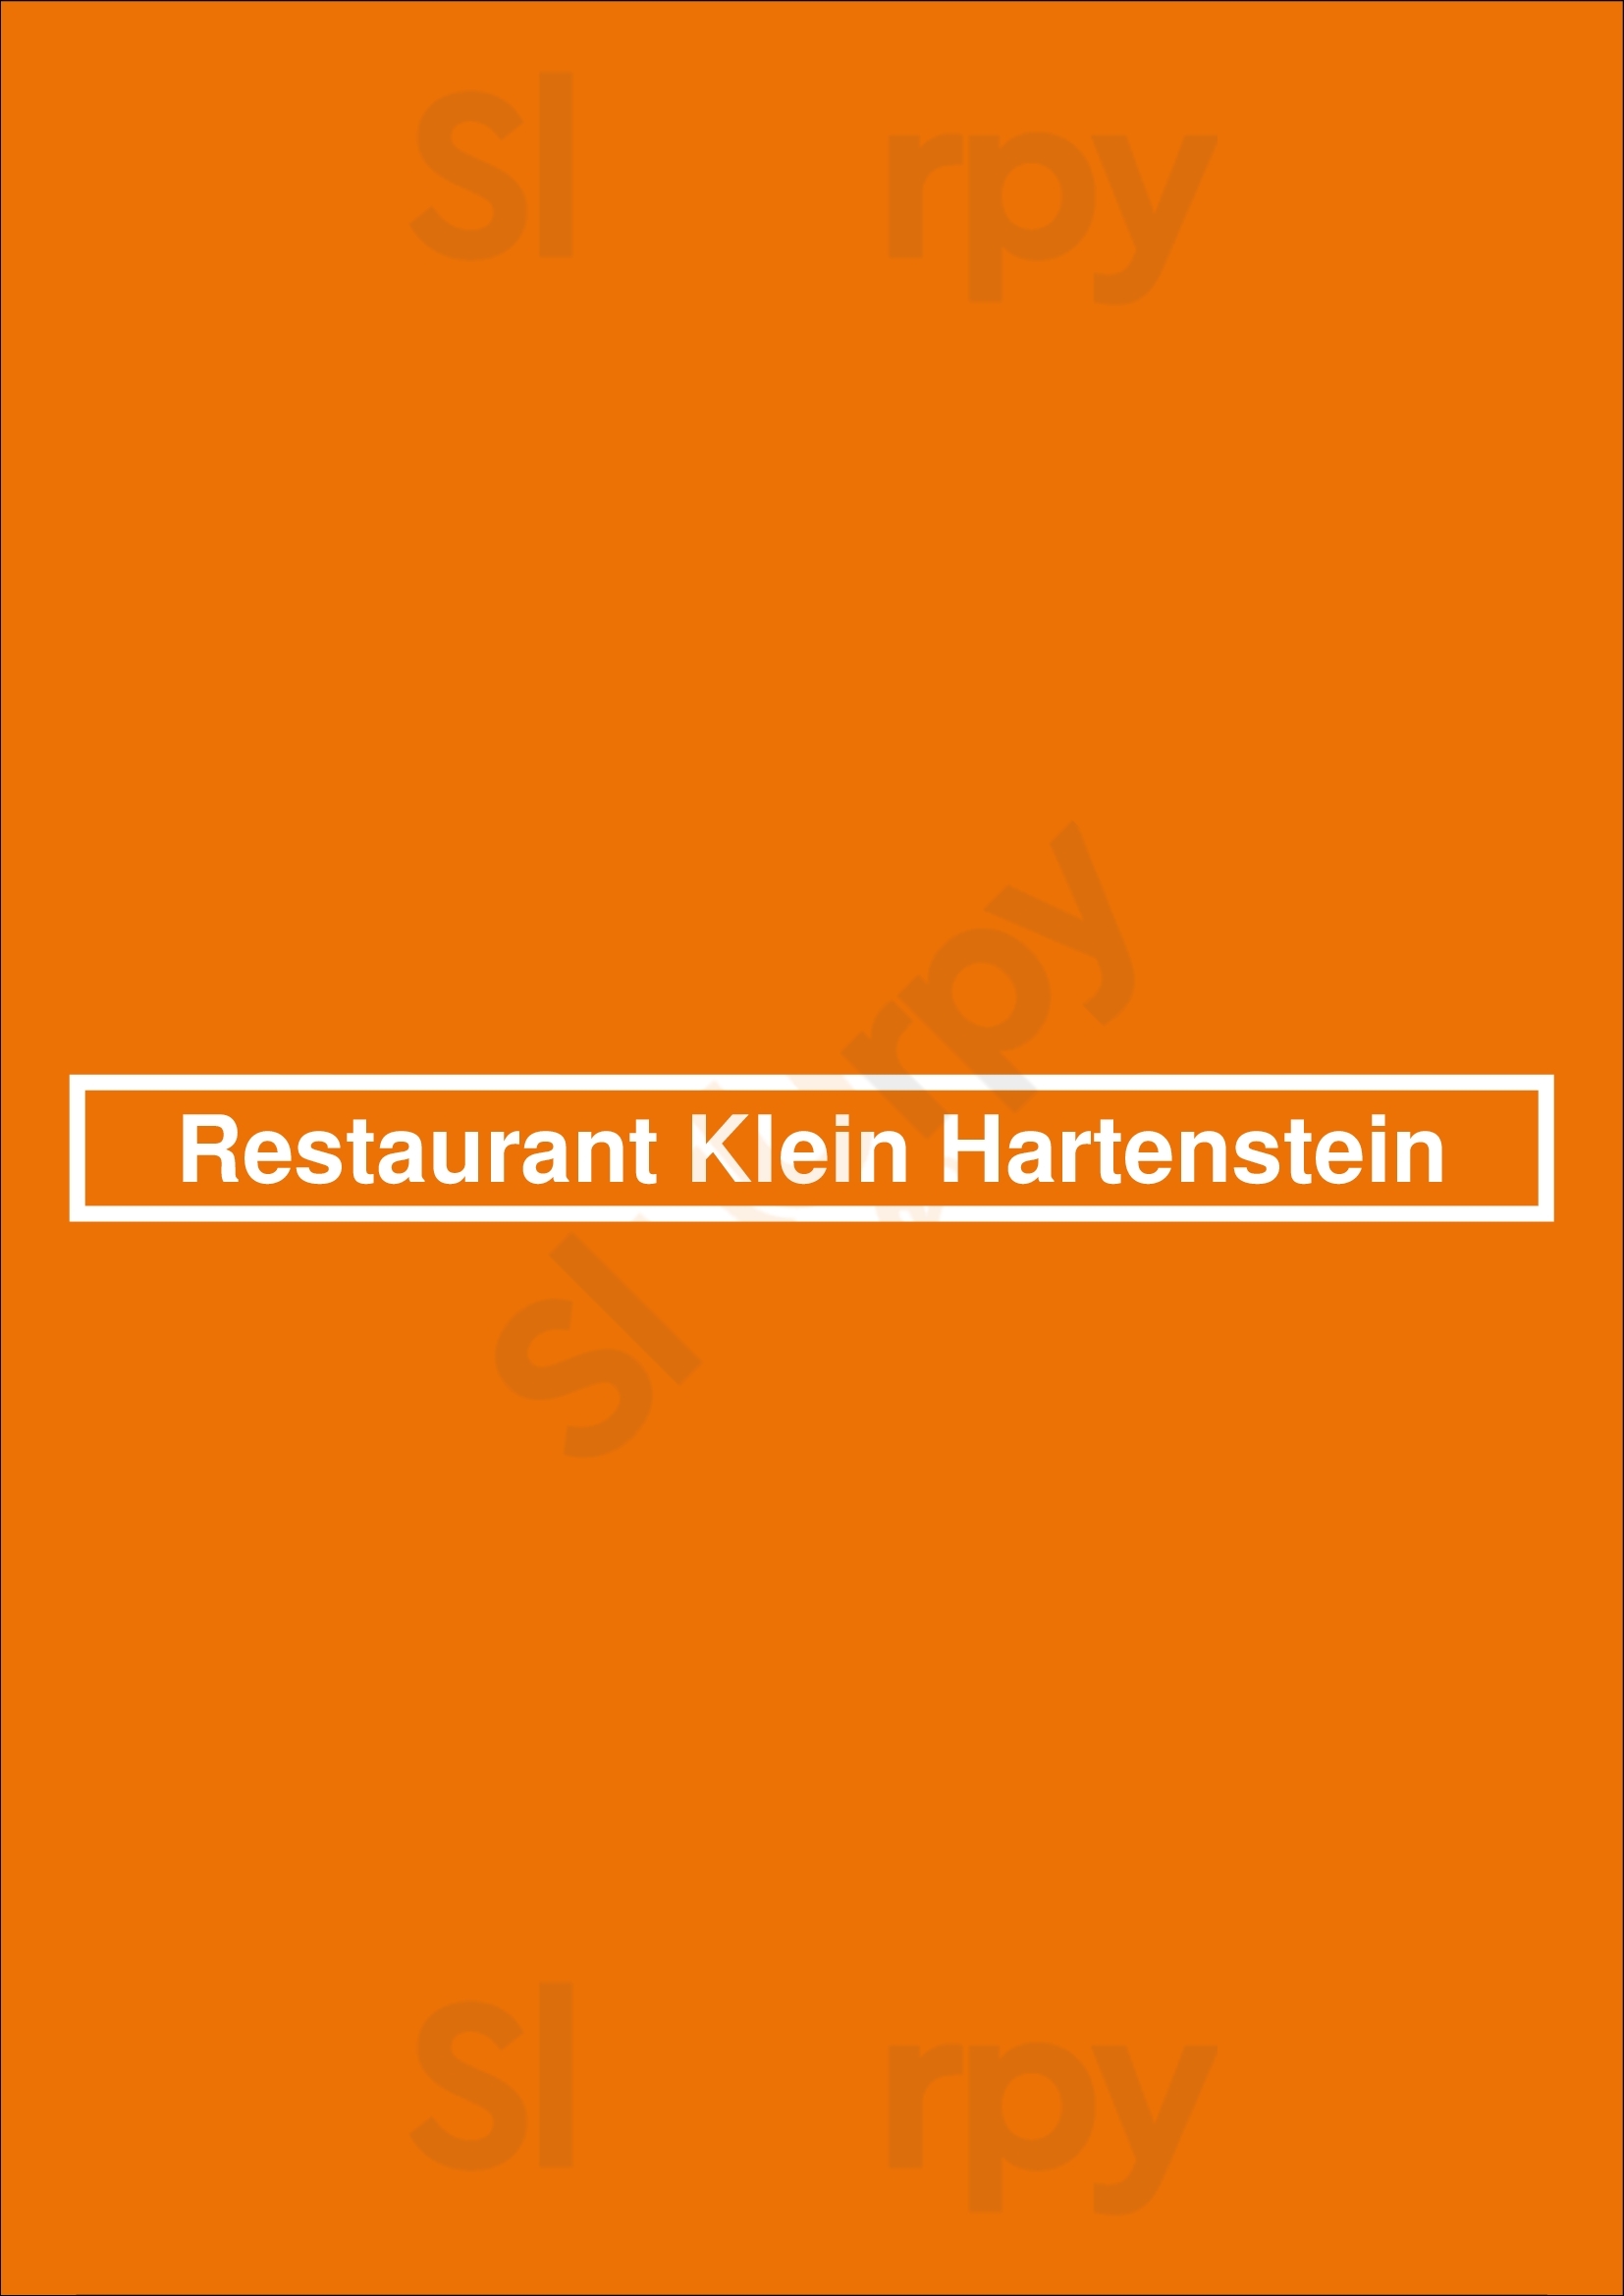 Restaurant Klein Hartenstein Oosterbeek Menu - 1